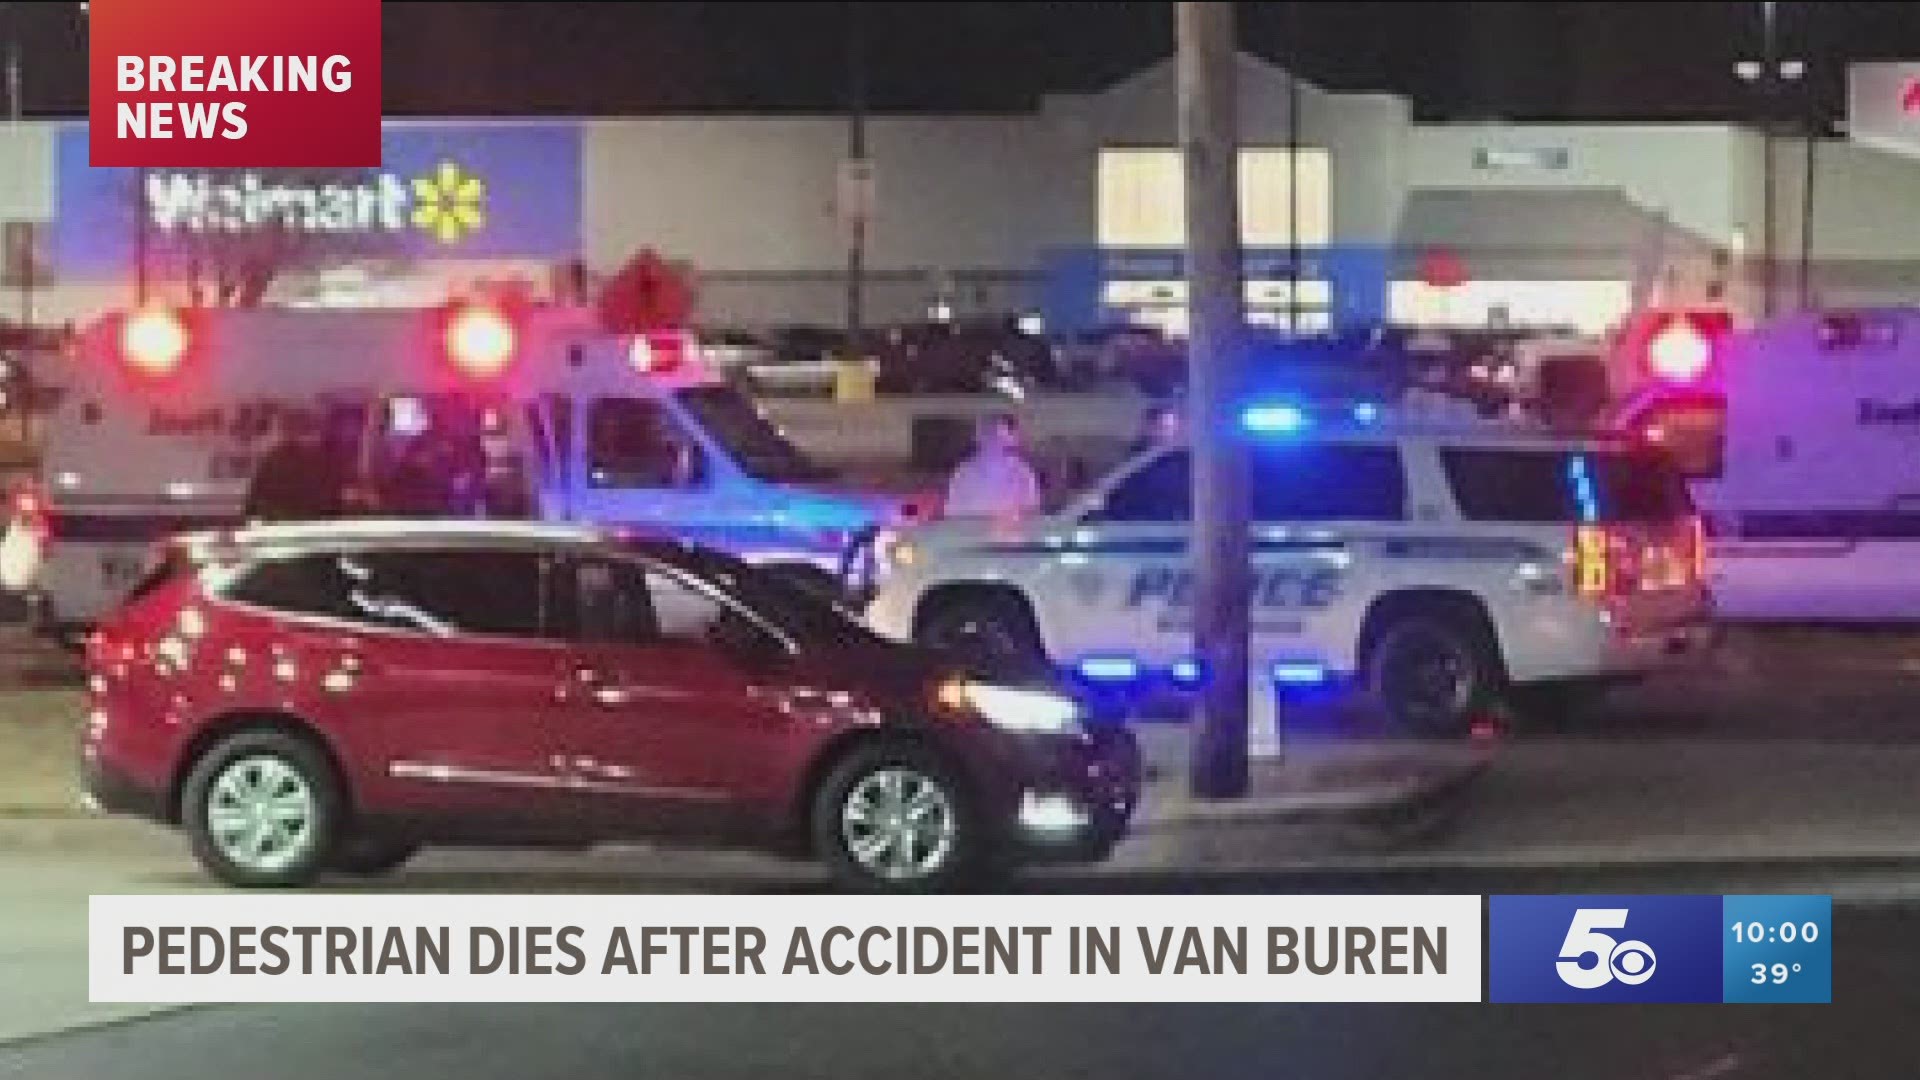 Police in Van Buren confirmed a 59-year-old man is dead after he was struck by a vehicle near a Walmart in Van Buren Monday night.